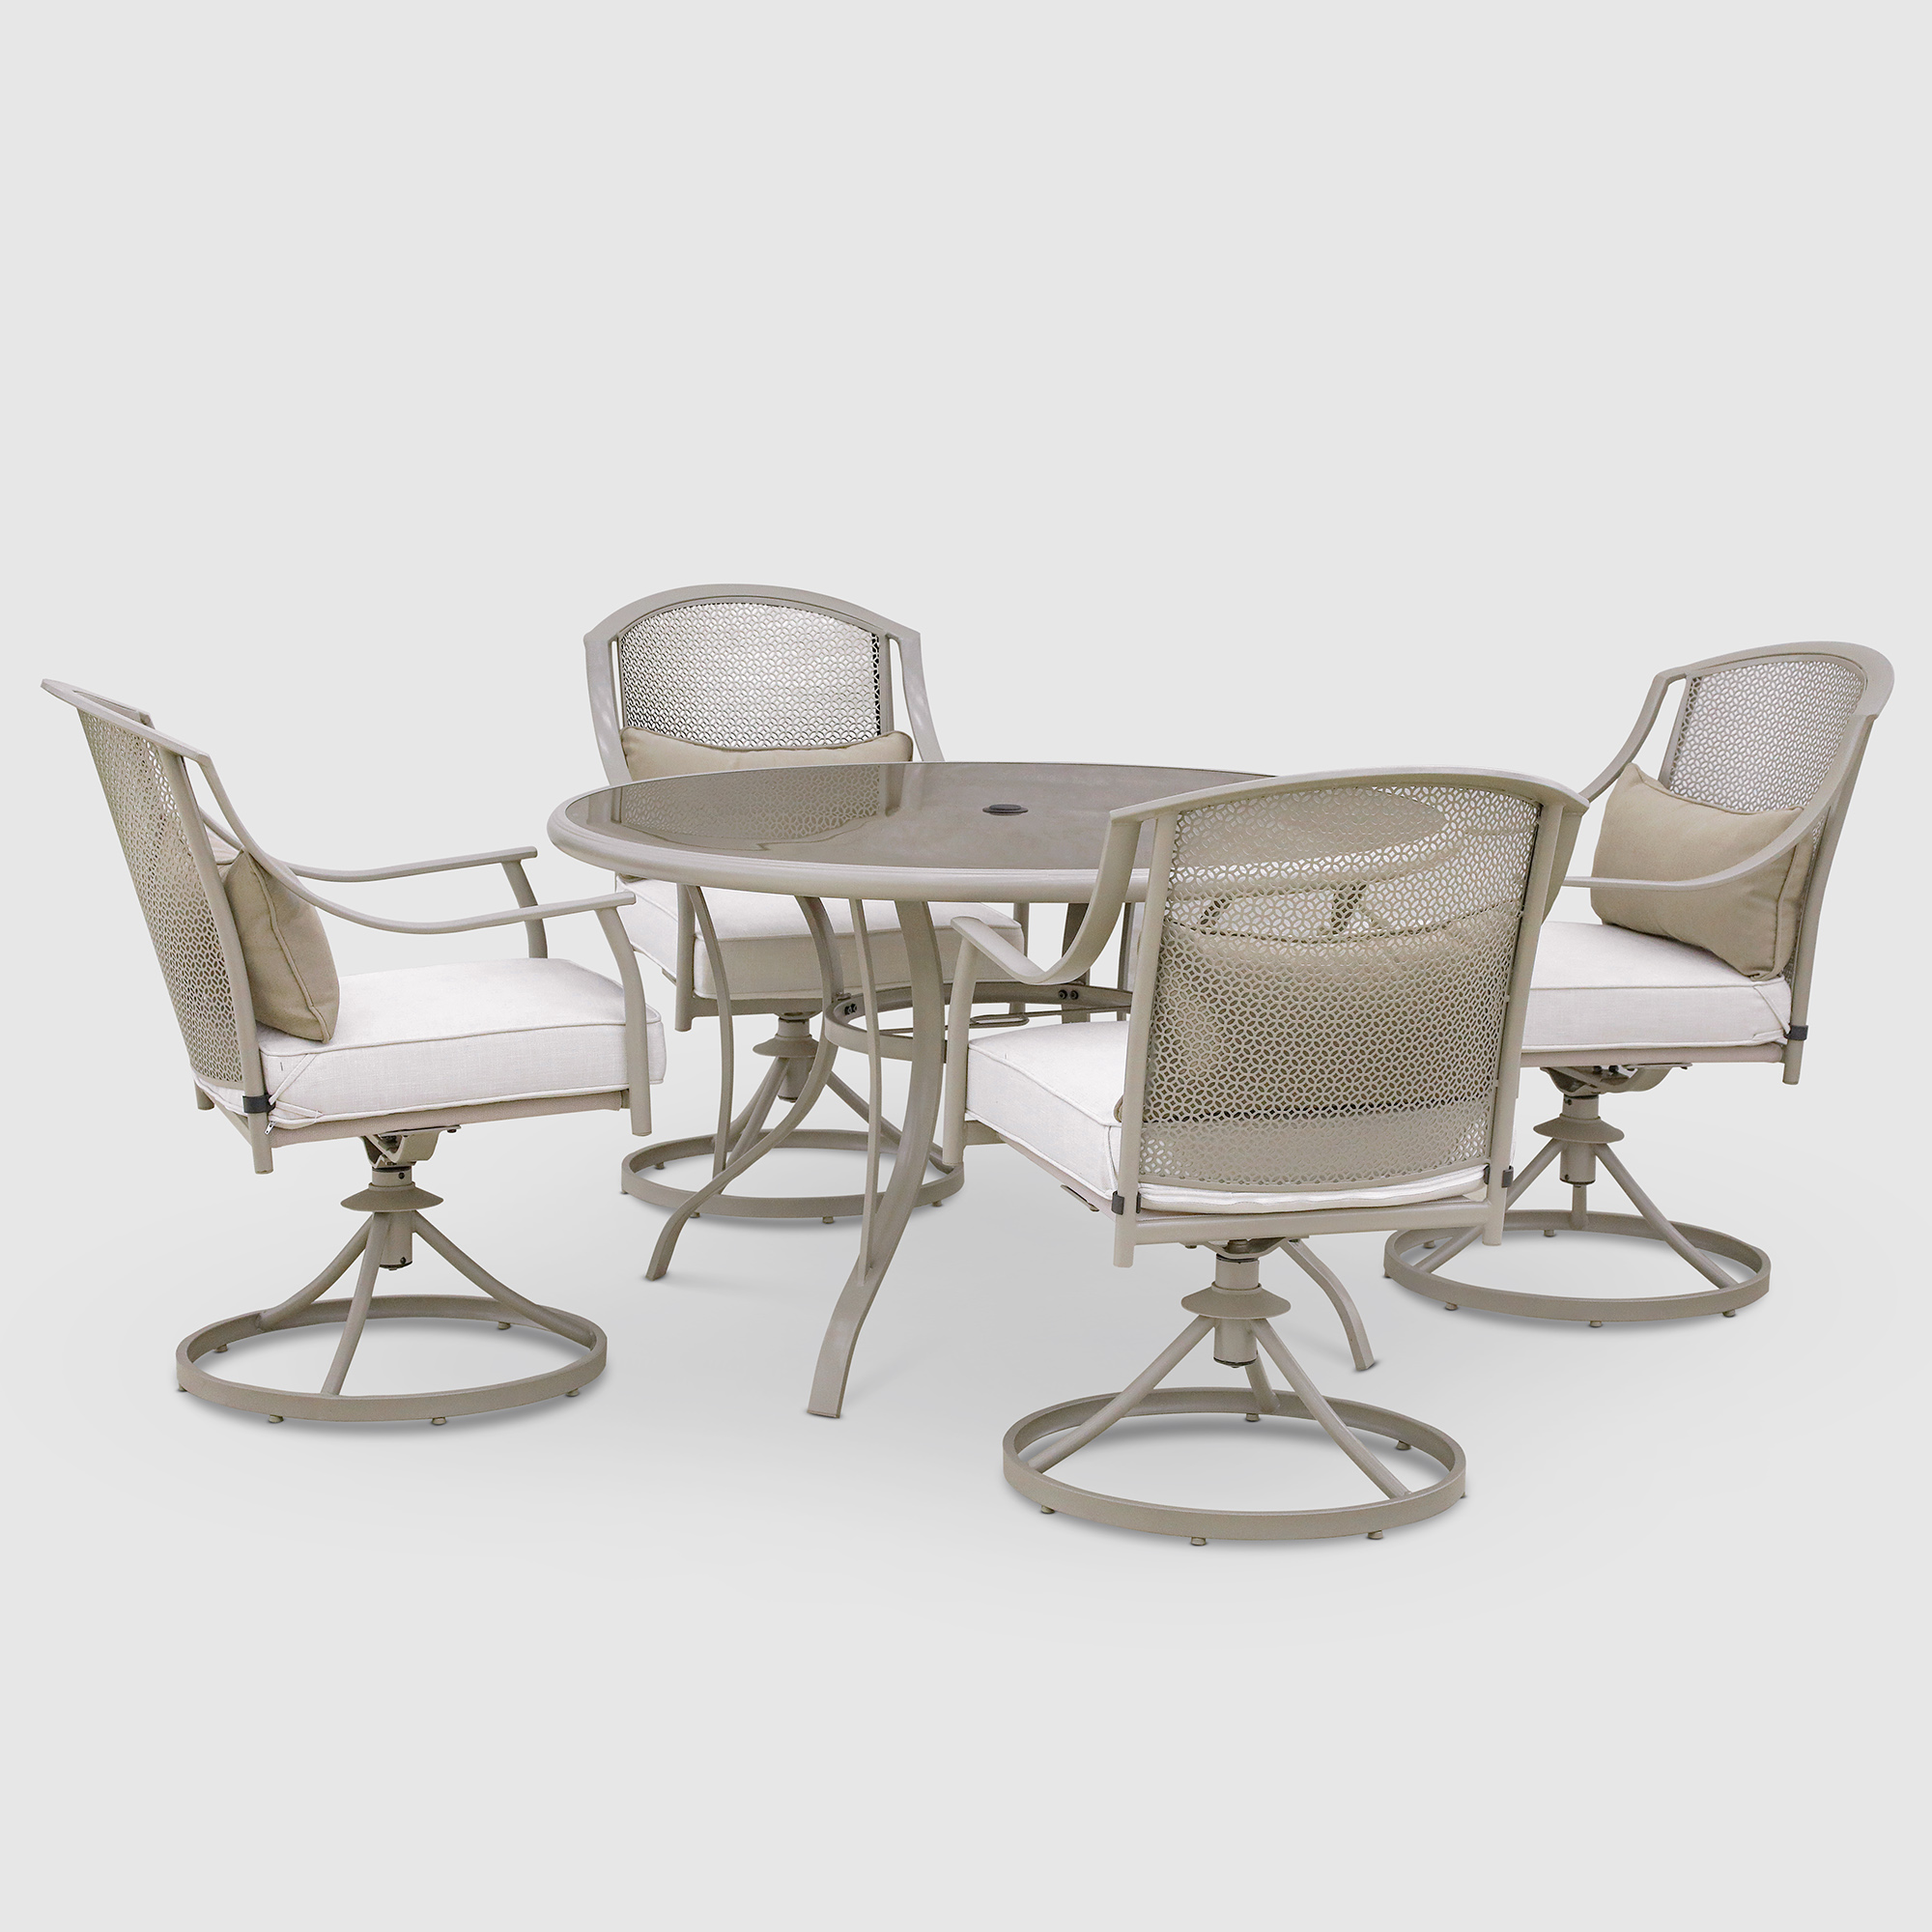 Комплект мебели Greenpatio с вращающимися стульями 5 предметов комплект мебели greenpatio серый с белым 4 предмета